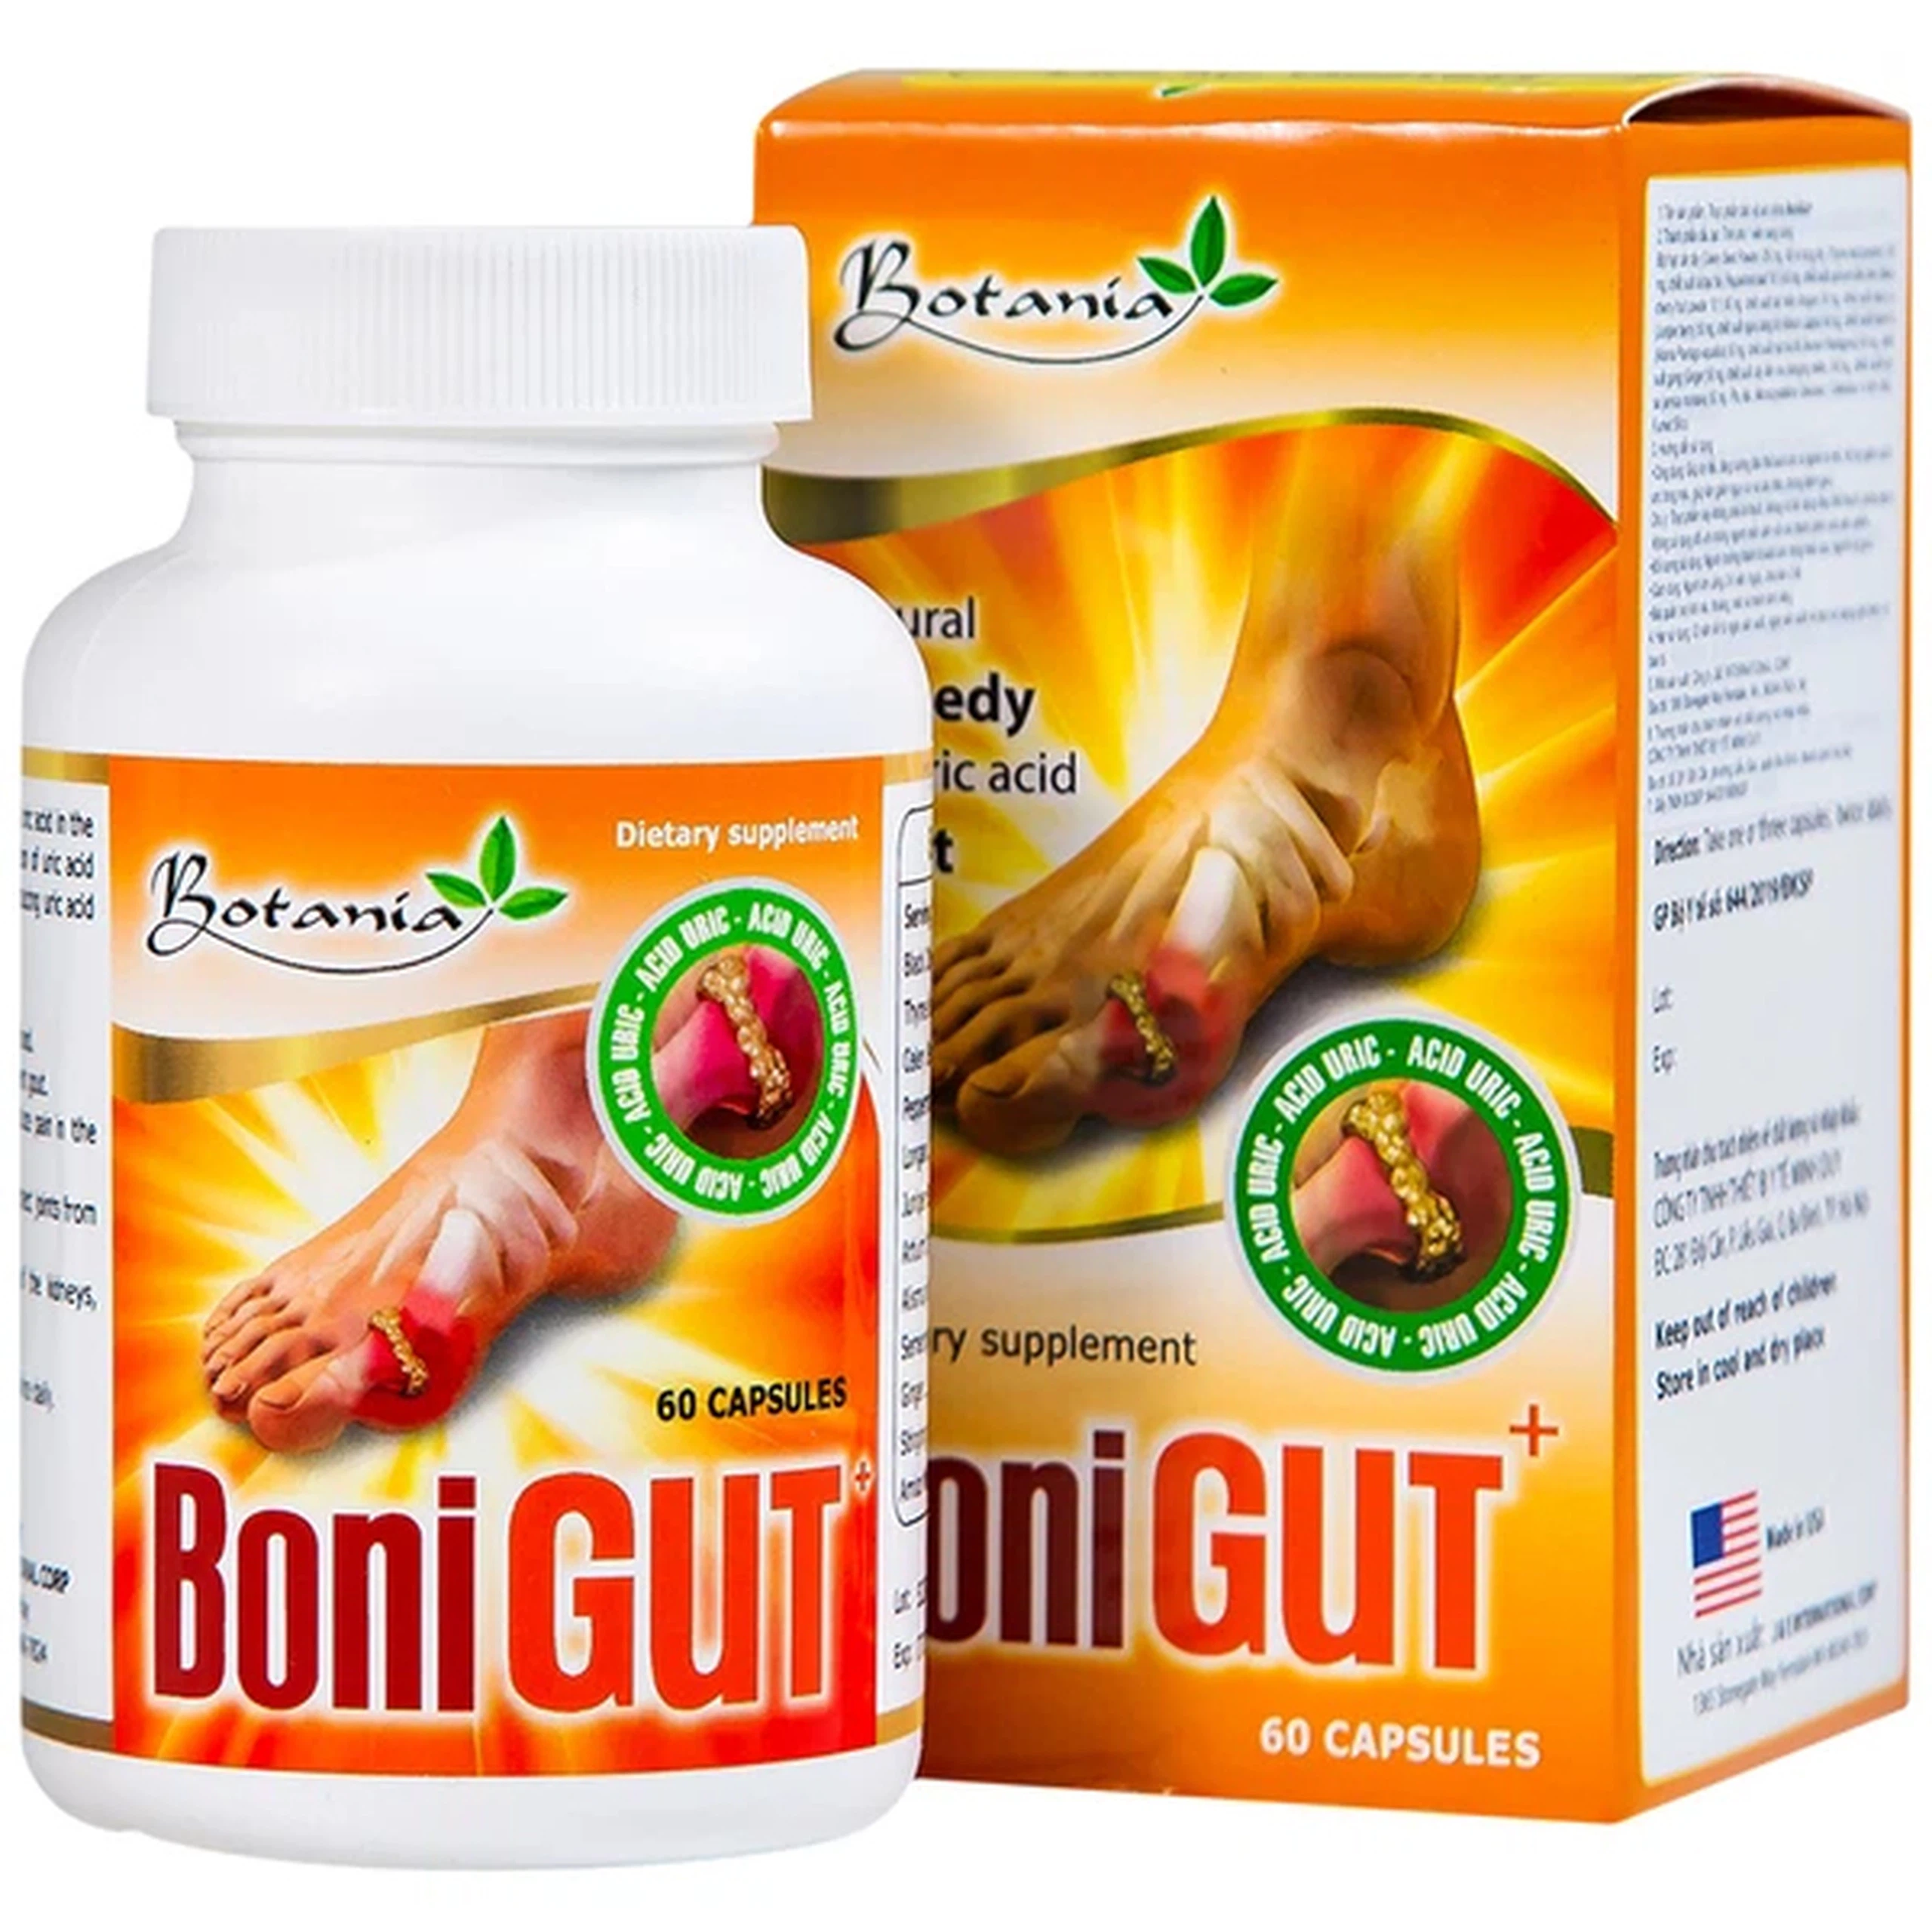 Viên uống BoniGut Botania giảm nồng độ acid uric trong máu, hỗ trợ điều trị bệnh gout (60 viên)